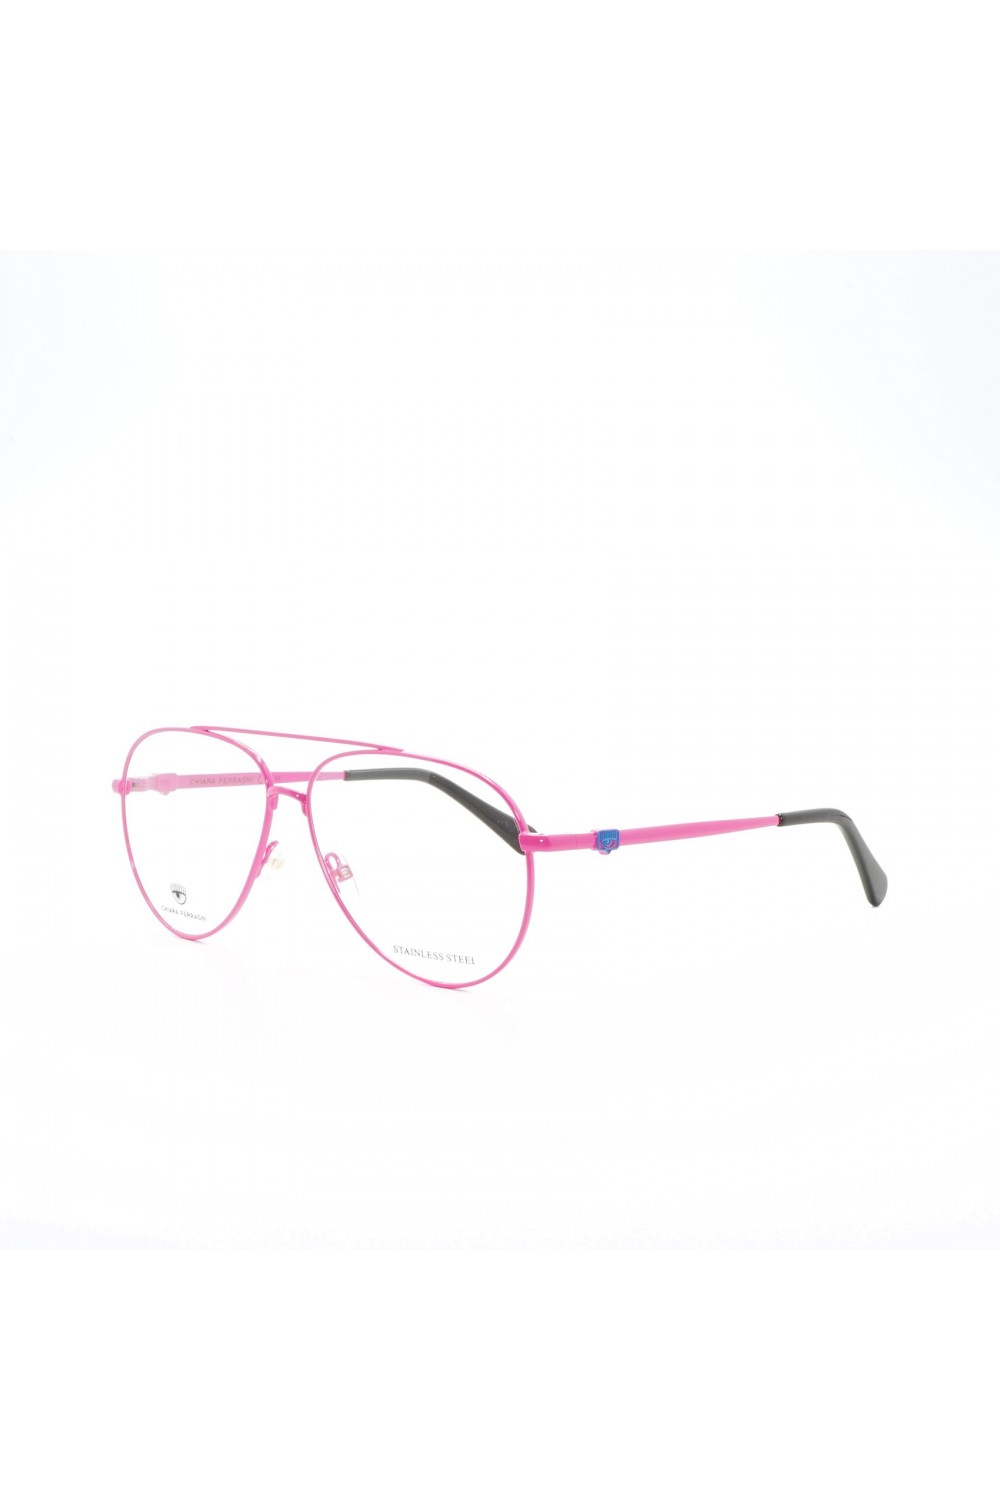 Chiara Ferragni - Occhiali da vista in metallo a goccia per bambina rosa -